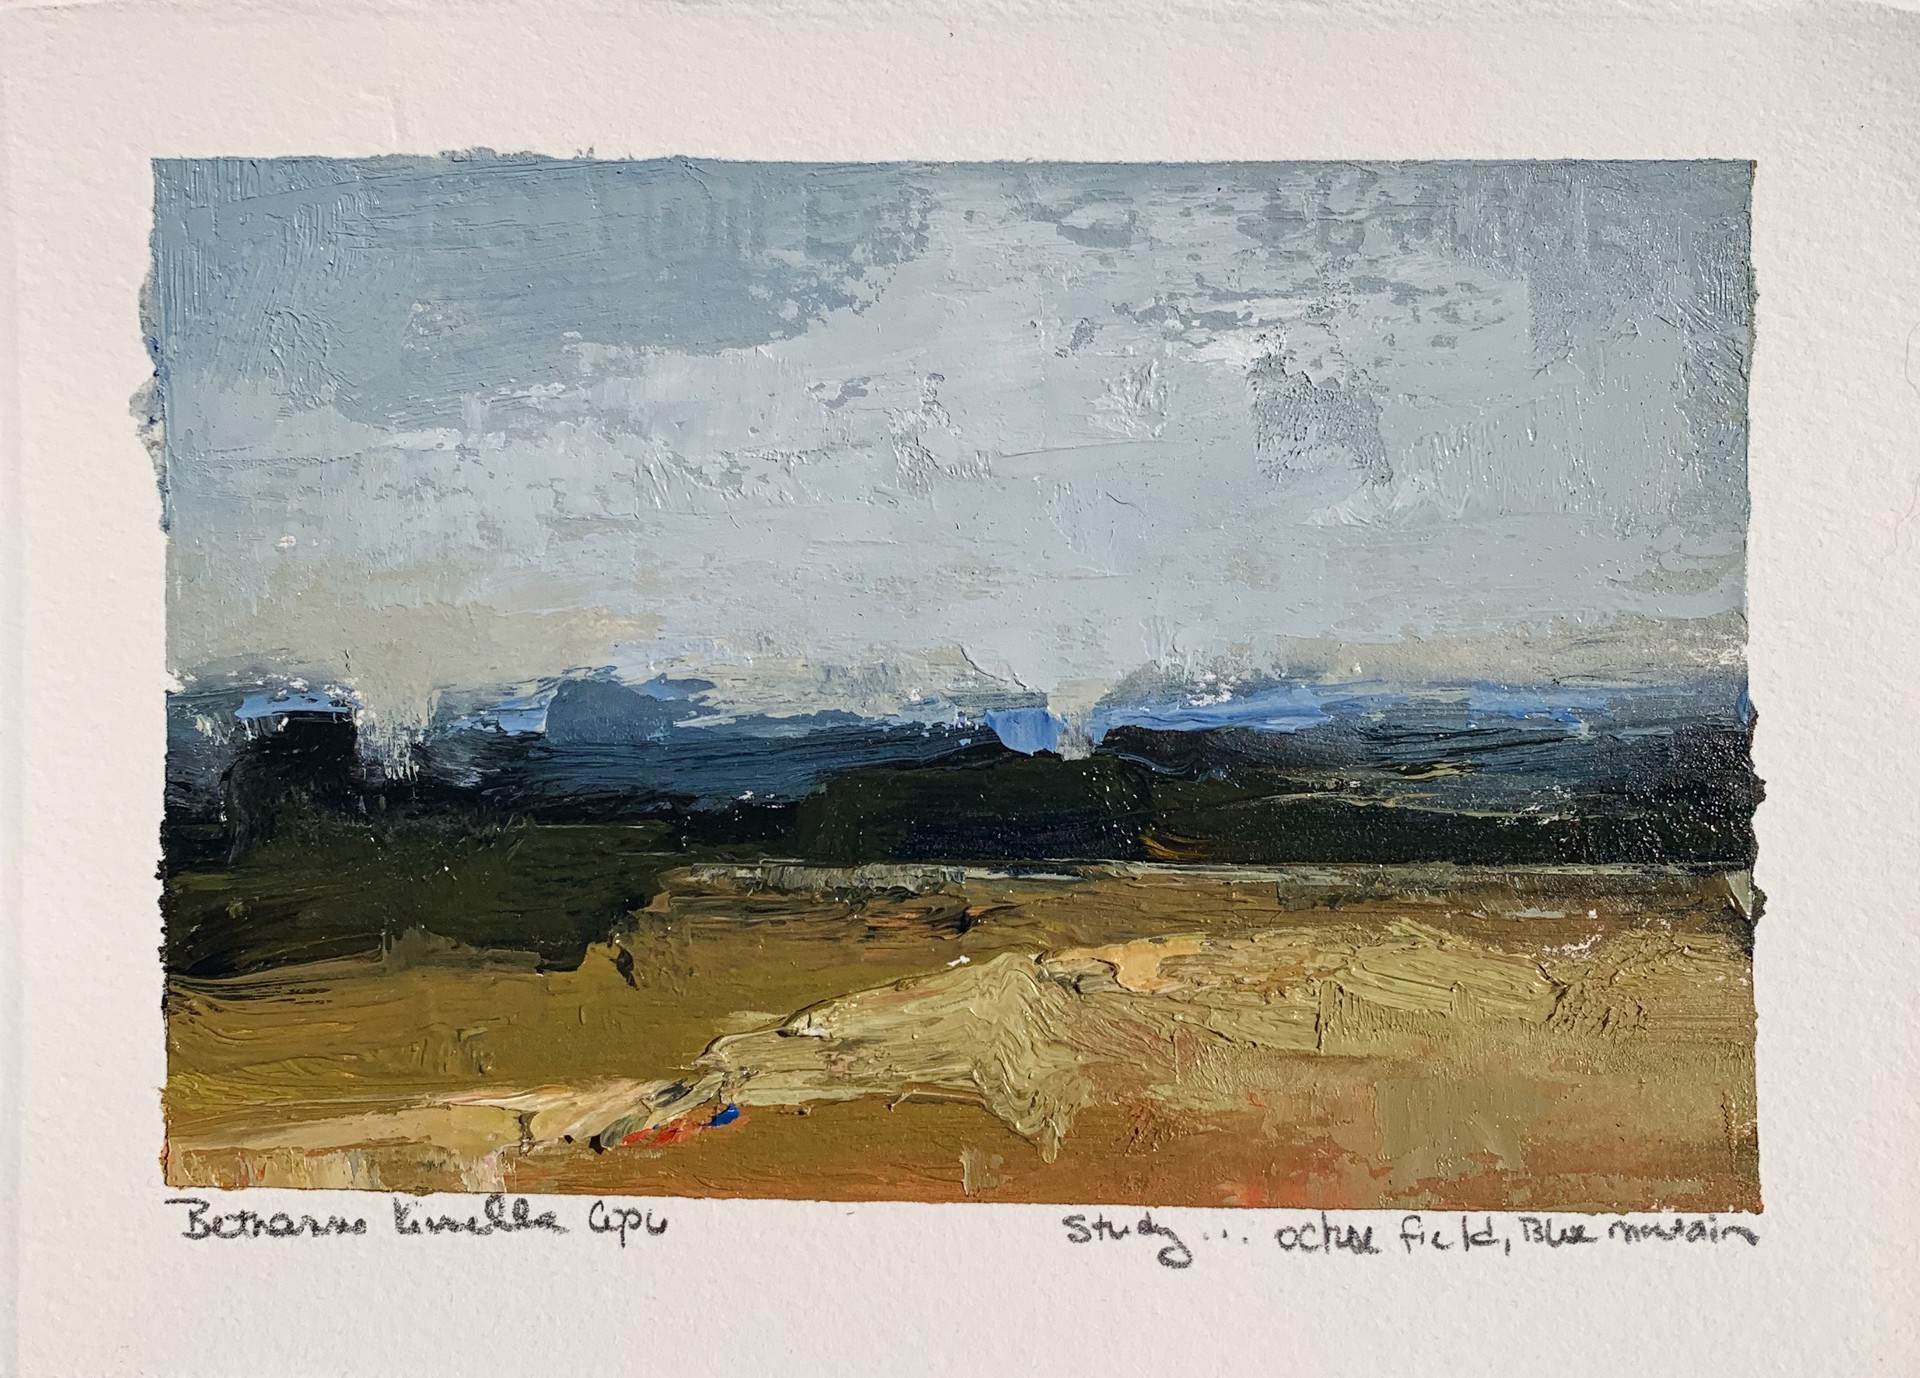 Field, Blue Mountain (Study) by Bethanne Cople